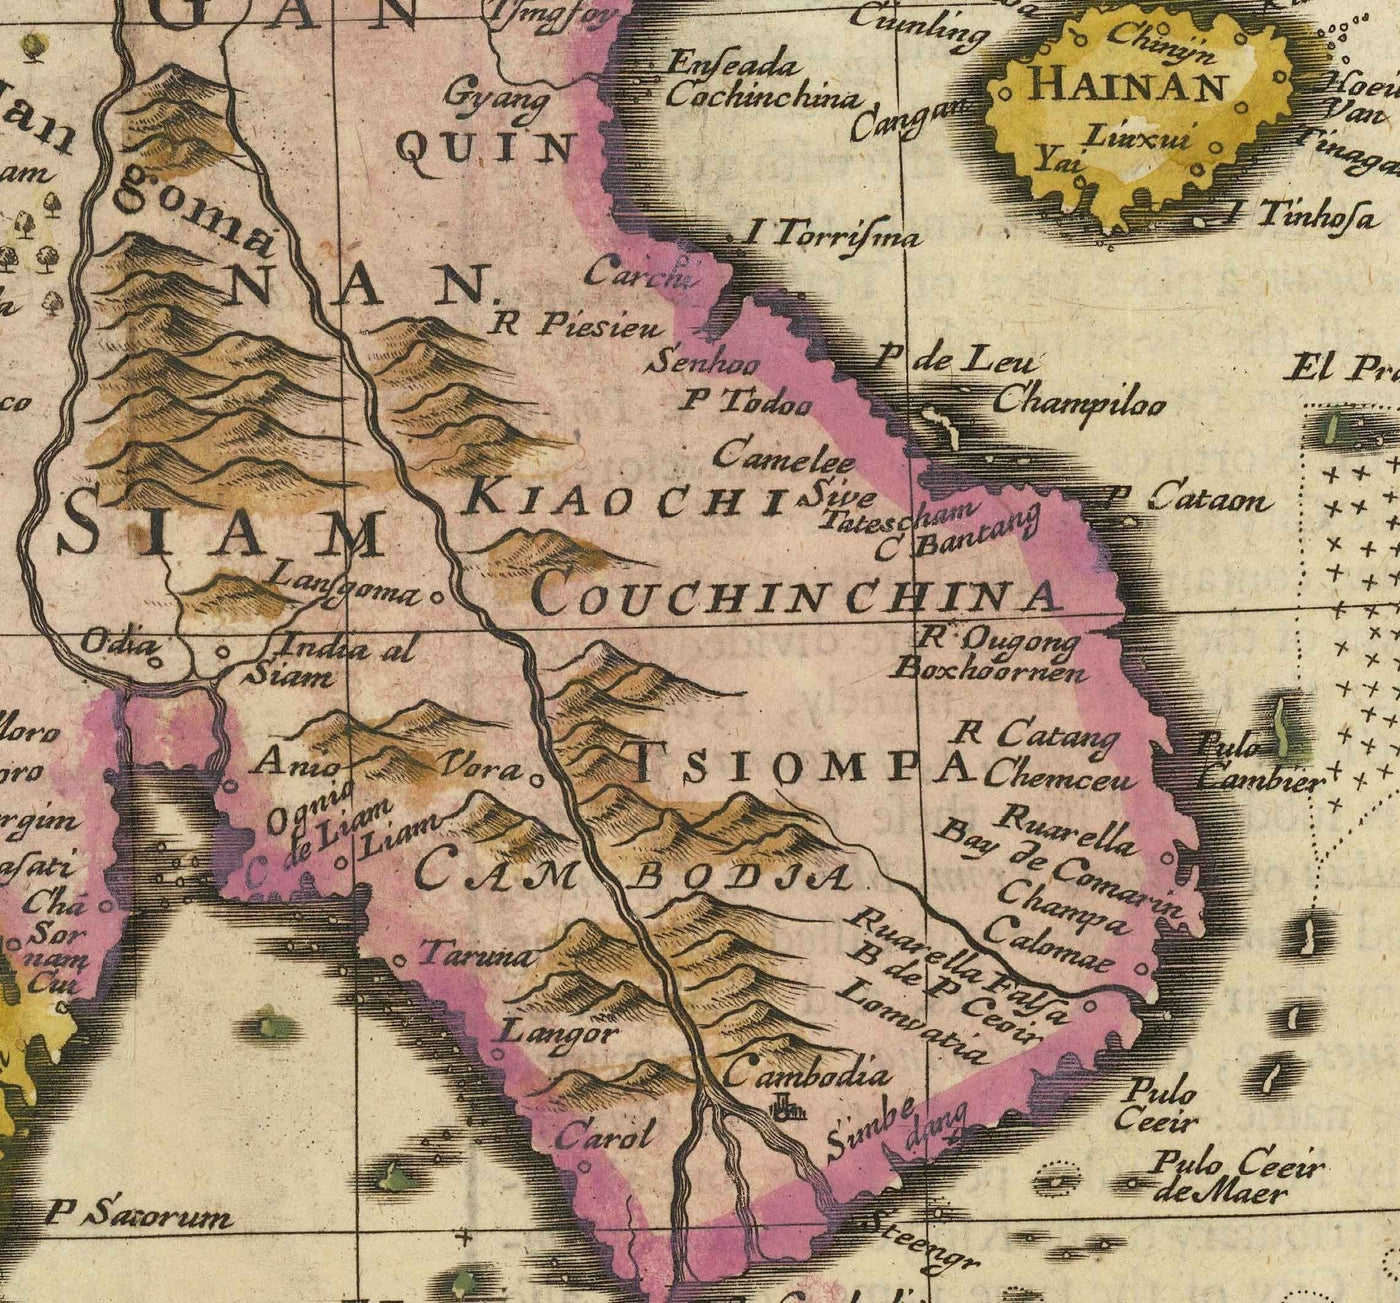 Alte Karte von Indien und Südostasien, 1676 von John Speed - Pakistan, Thailand, China, Indonesien, Taiwan